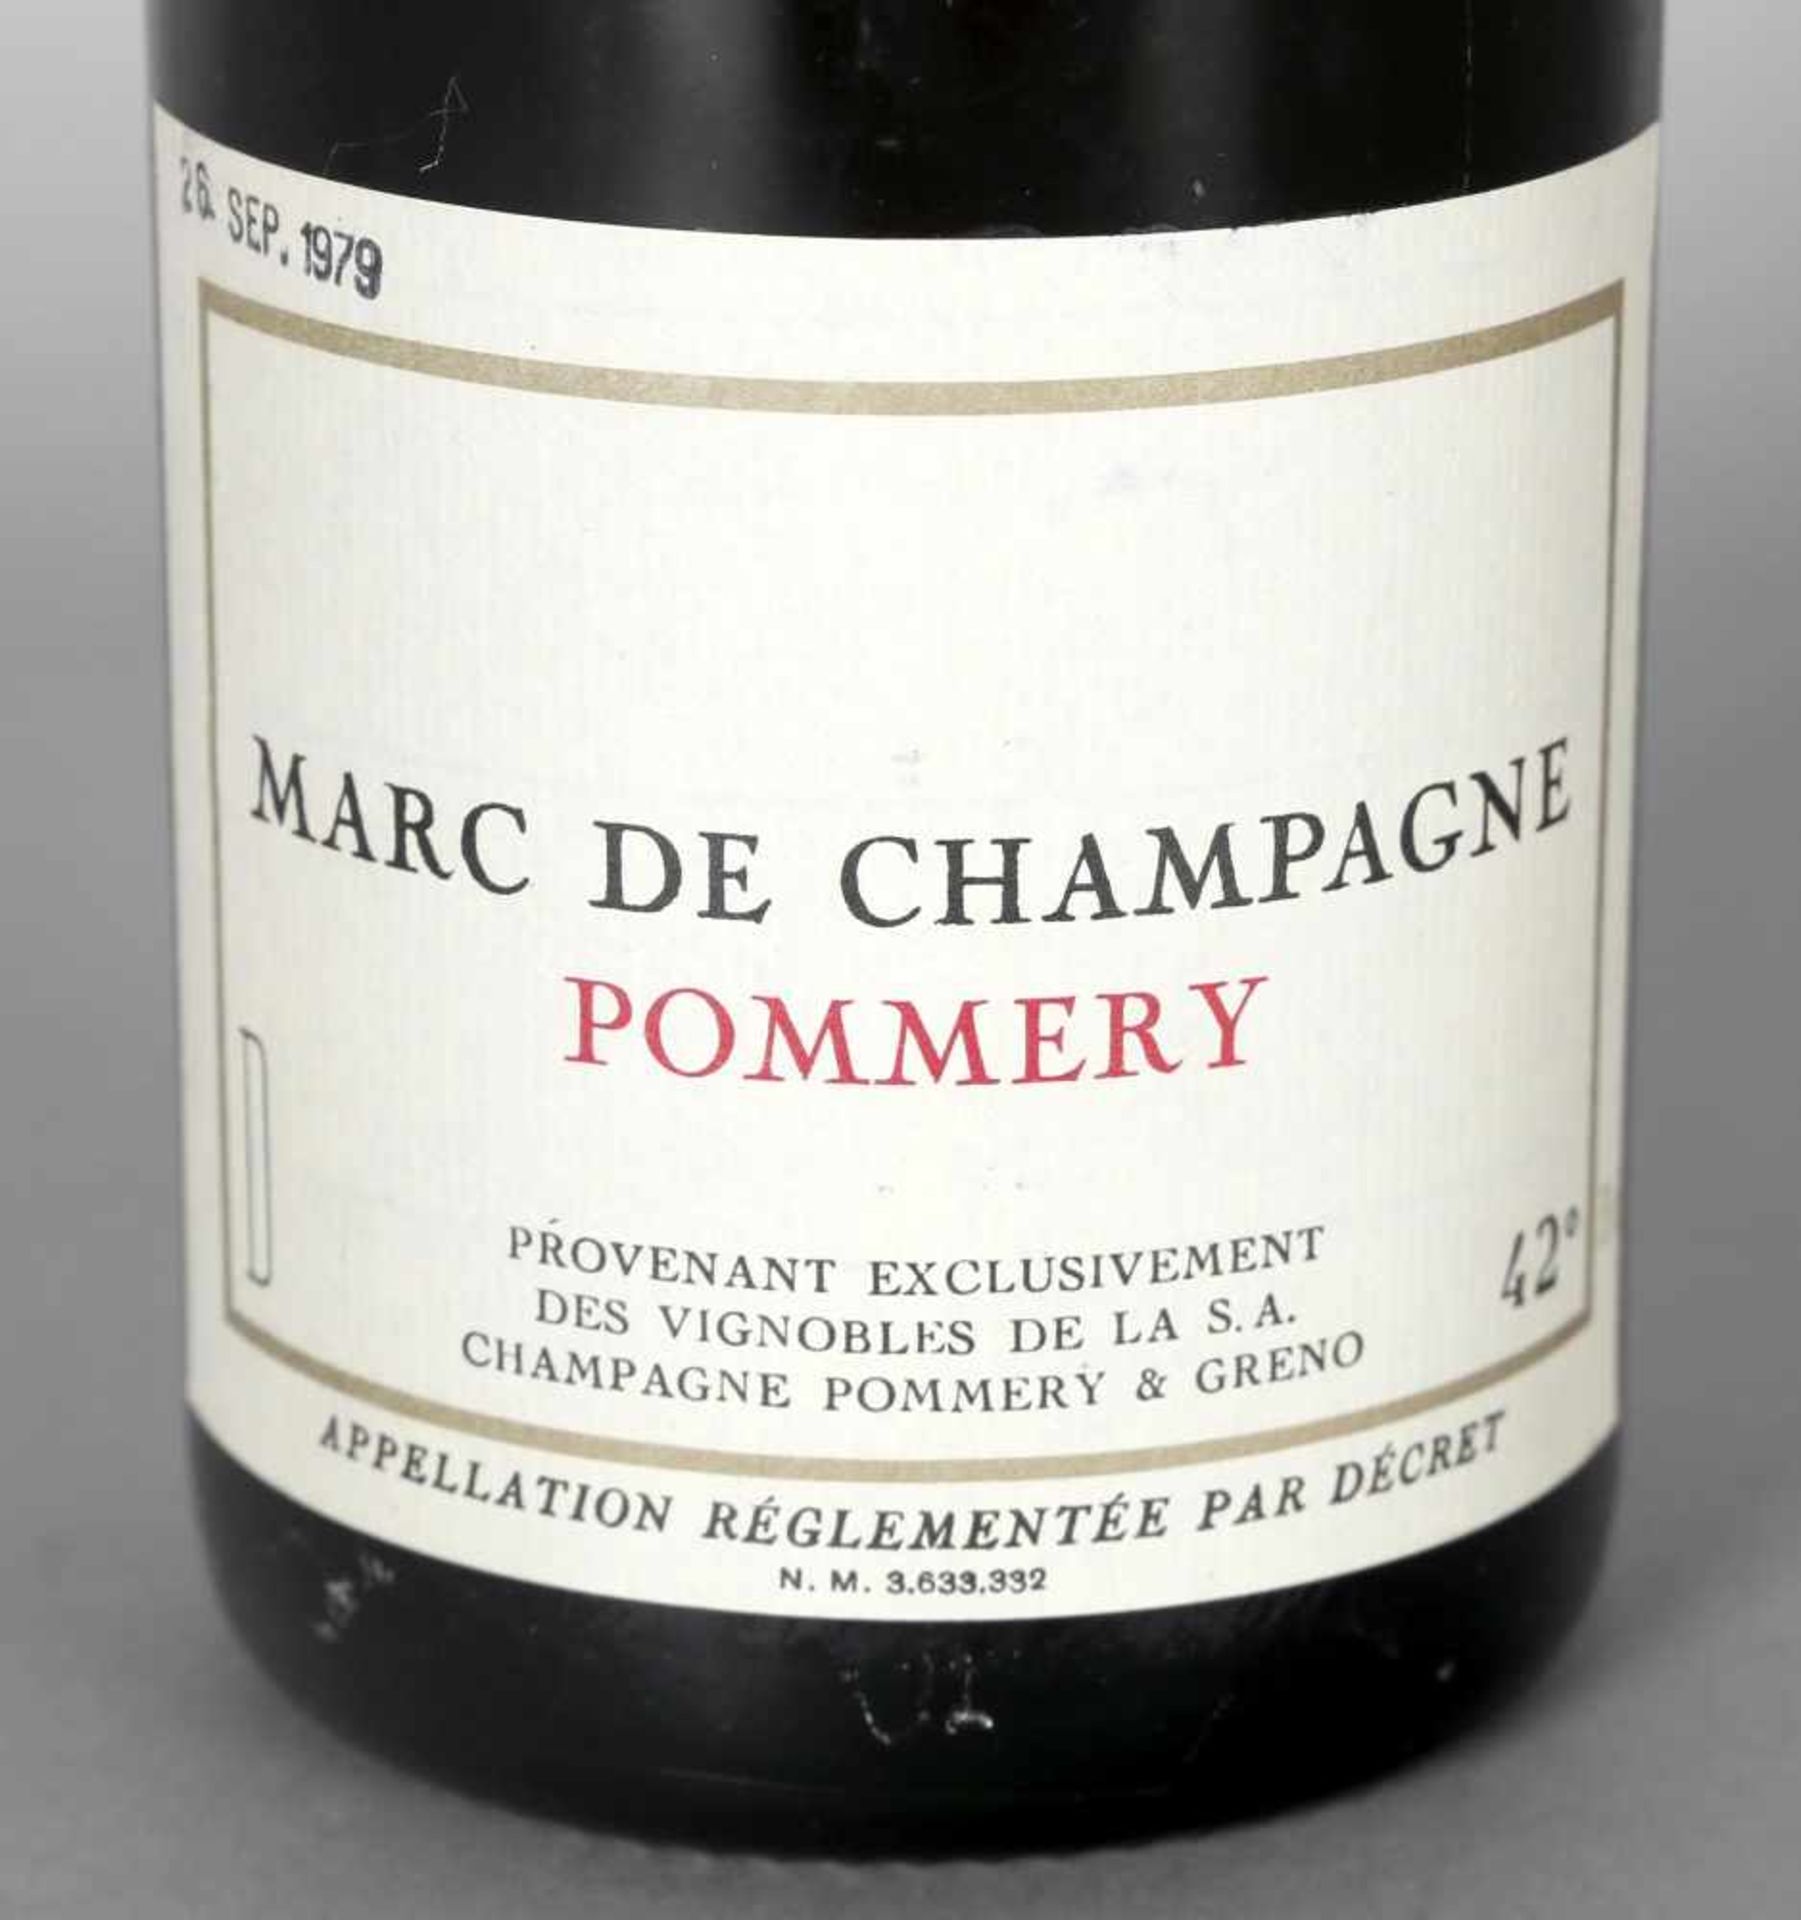 Marc de Champagne Pommery, Pommery & Greno0,75 ltr., 42 Vol. %, gestempelt 26. Sept. 1979, gute - Bild 2 aus 2